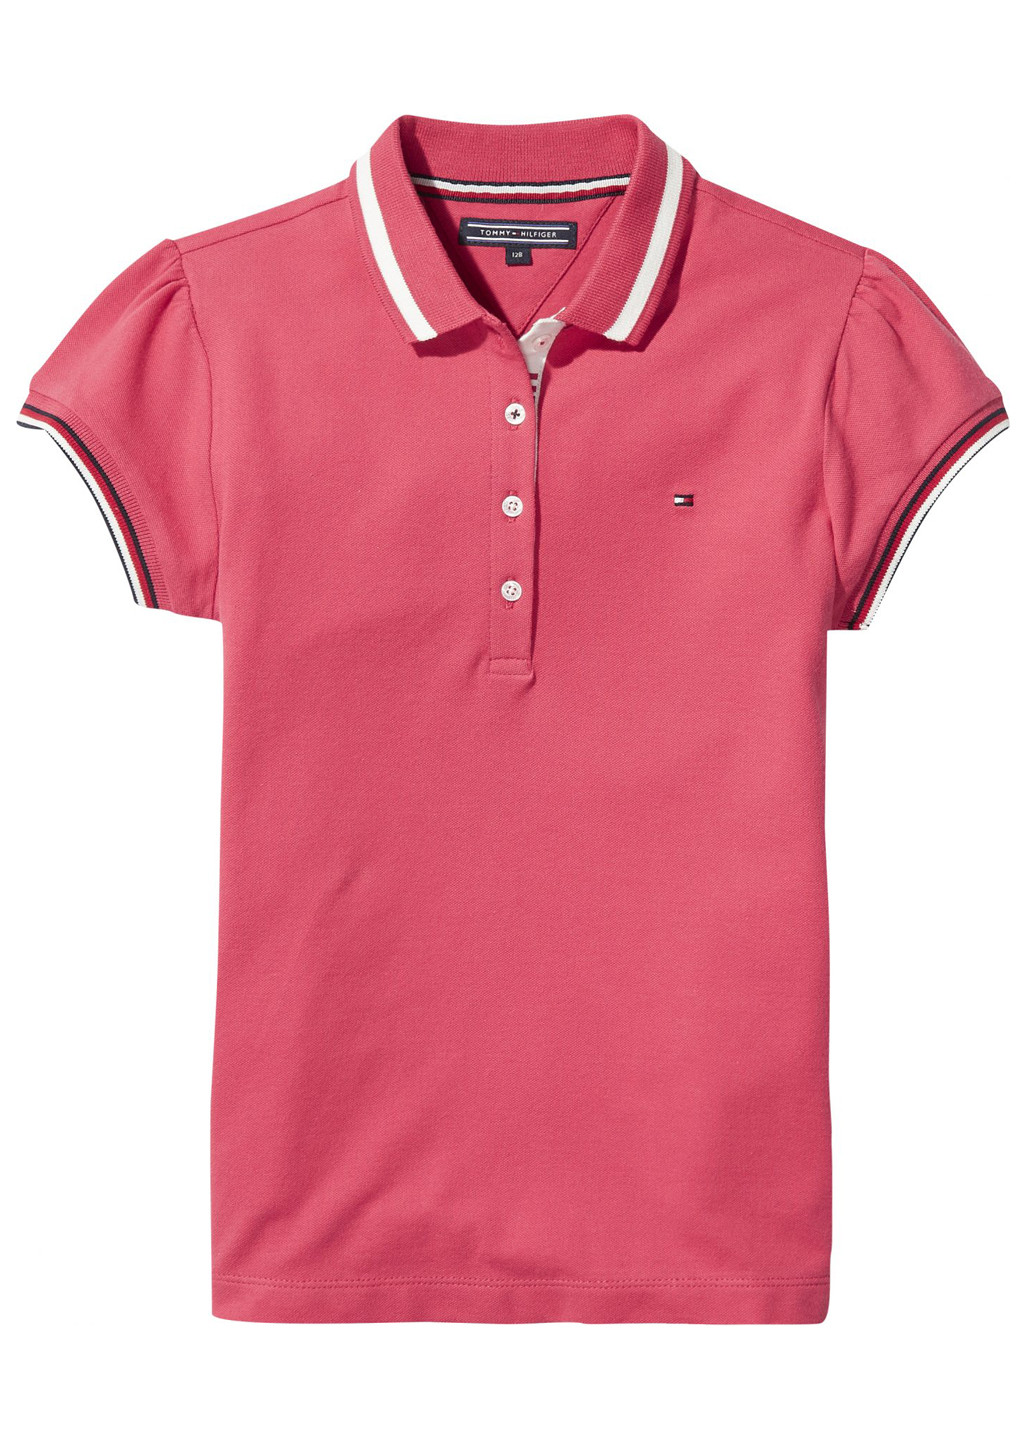 Розовая детская футболка-поло для девочки Tommy Hilfiger однотонная